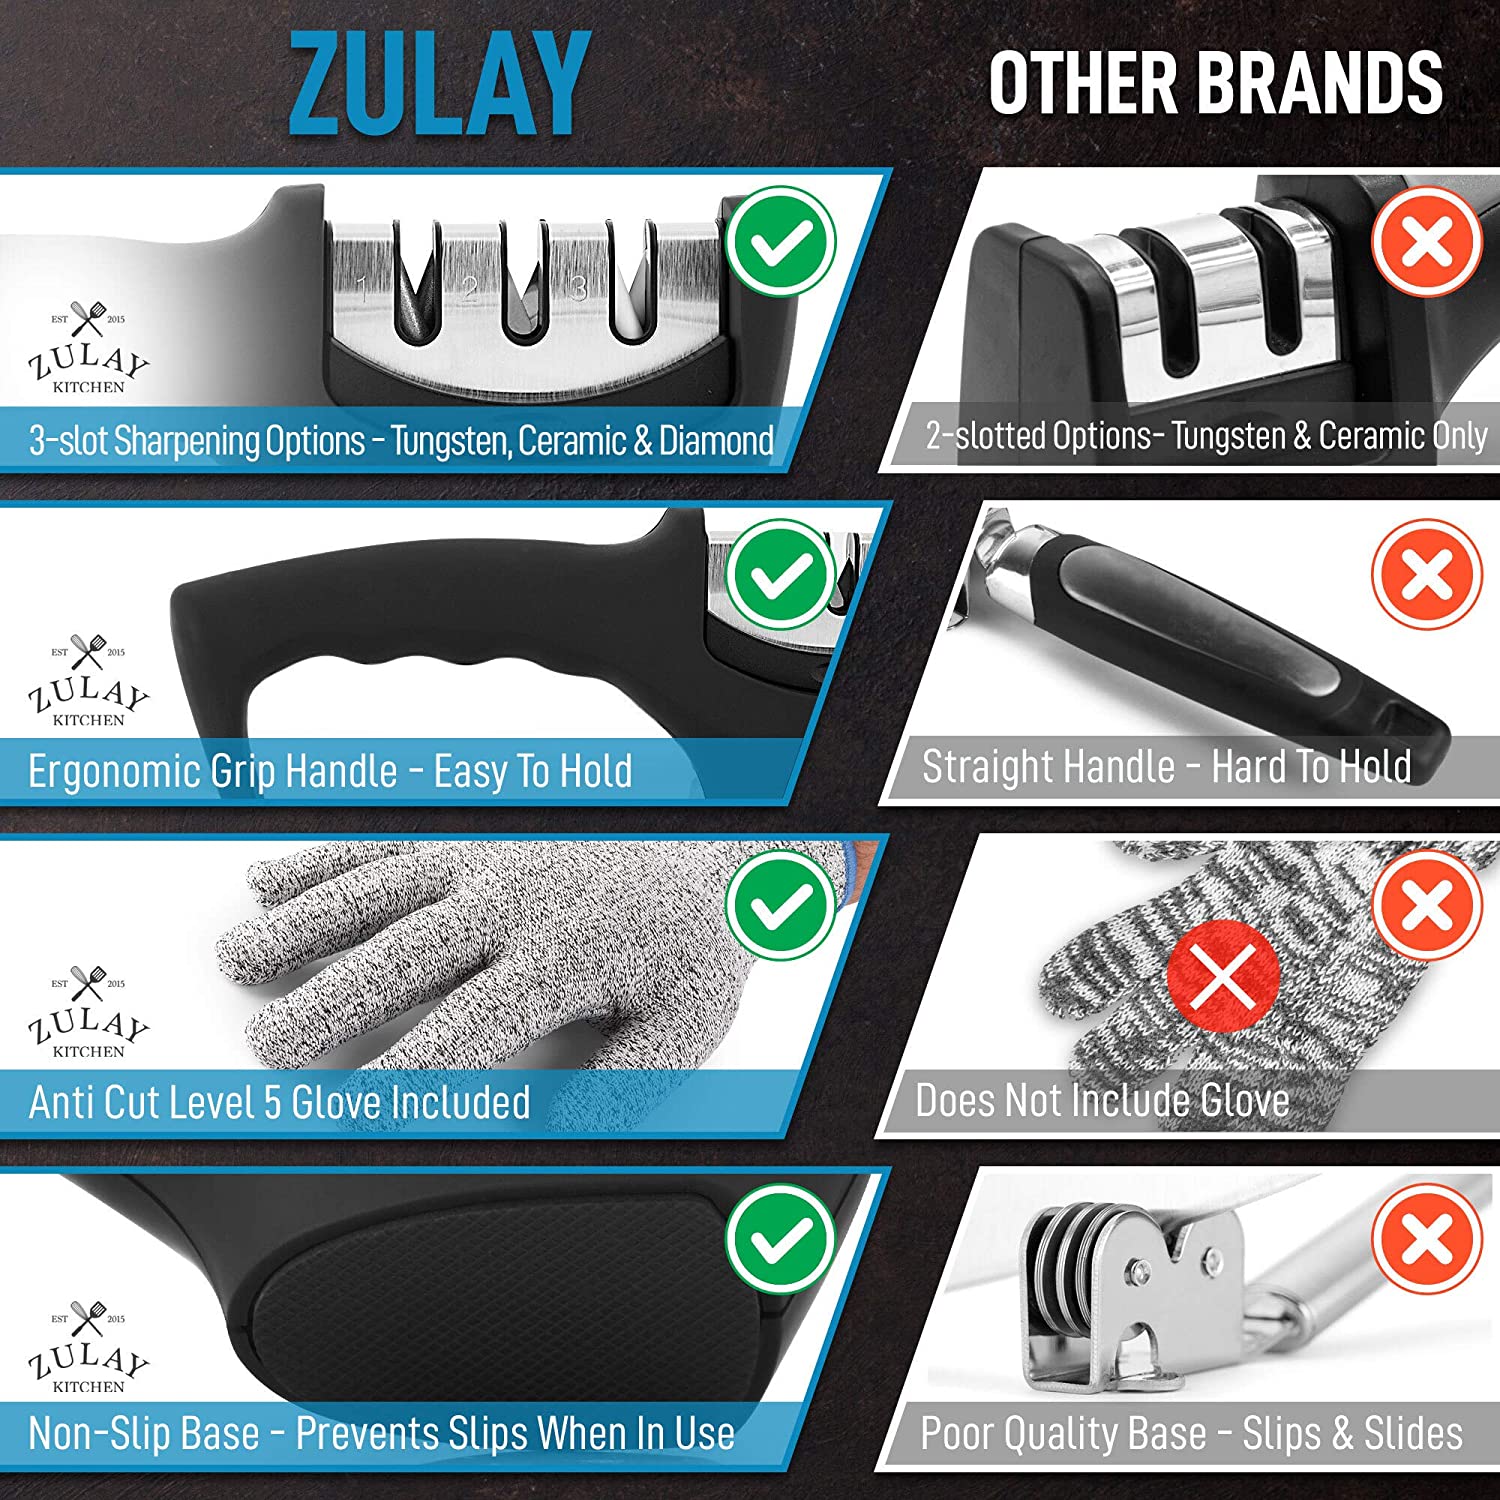 Zulay Kitchen 3 Stage Knife Sharpener & Cut-Resistant Glove - Zulay KitchenZulay Kitchen